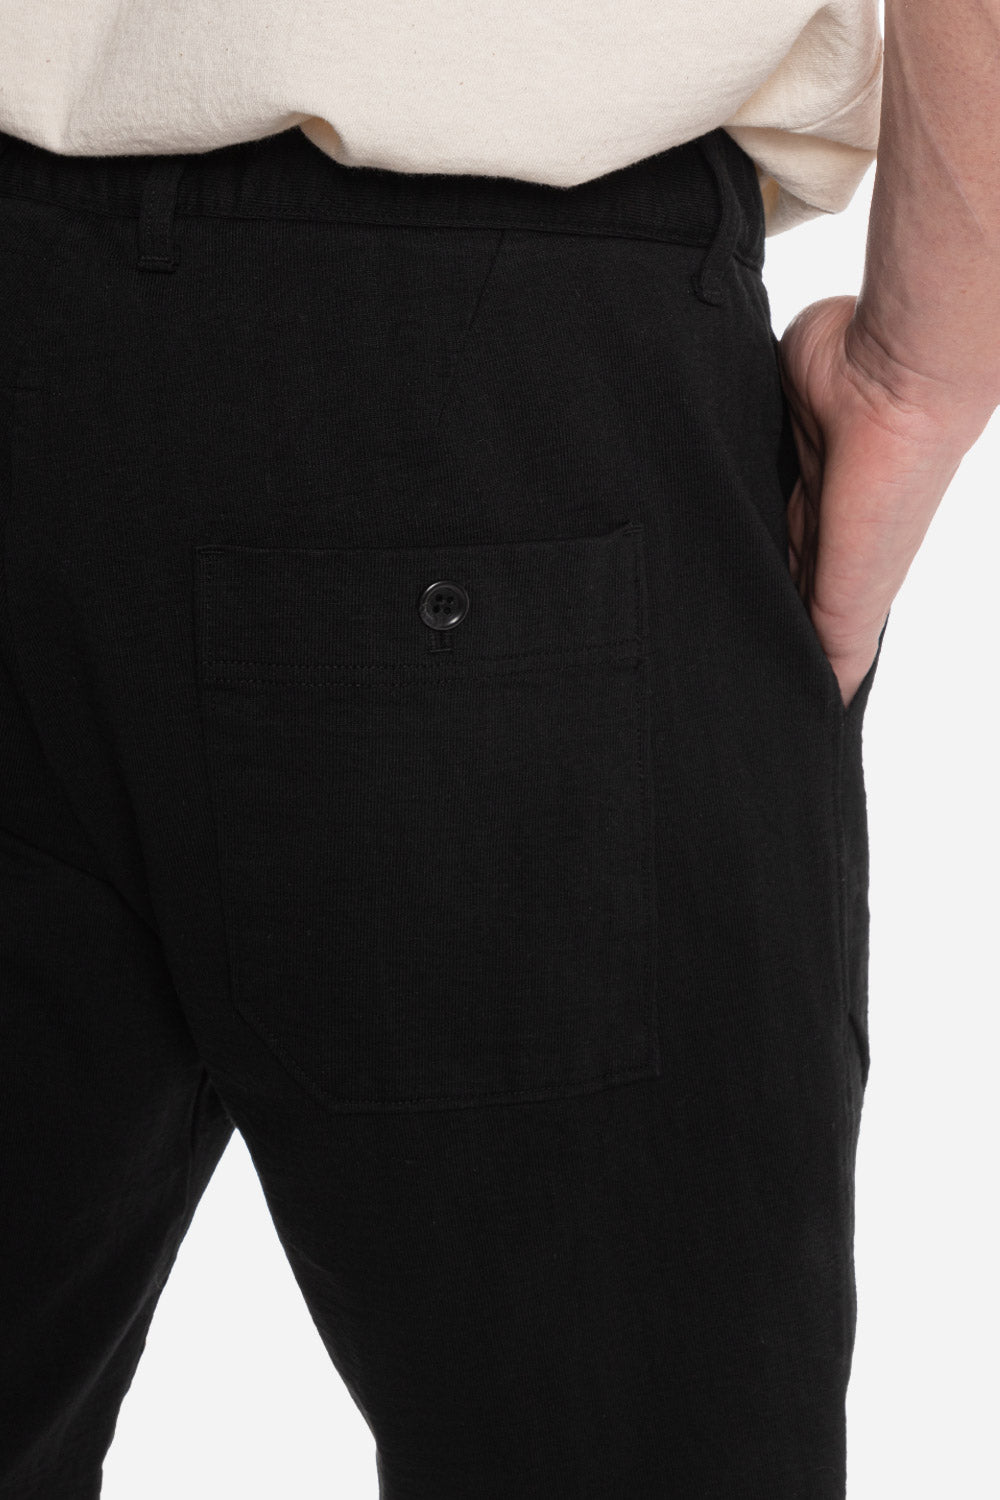 jackman-dotsume-shorts-black